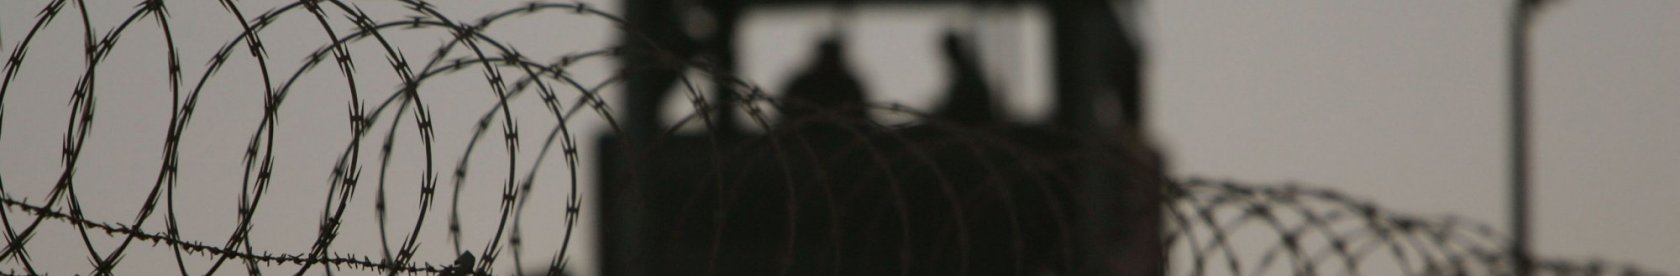 Minderjährige Häftlinge in Belarus und wie sie als billige Arbeitskräfte in Strafkolonien missbraucht werden